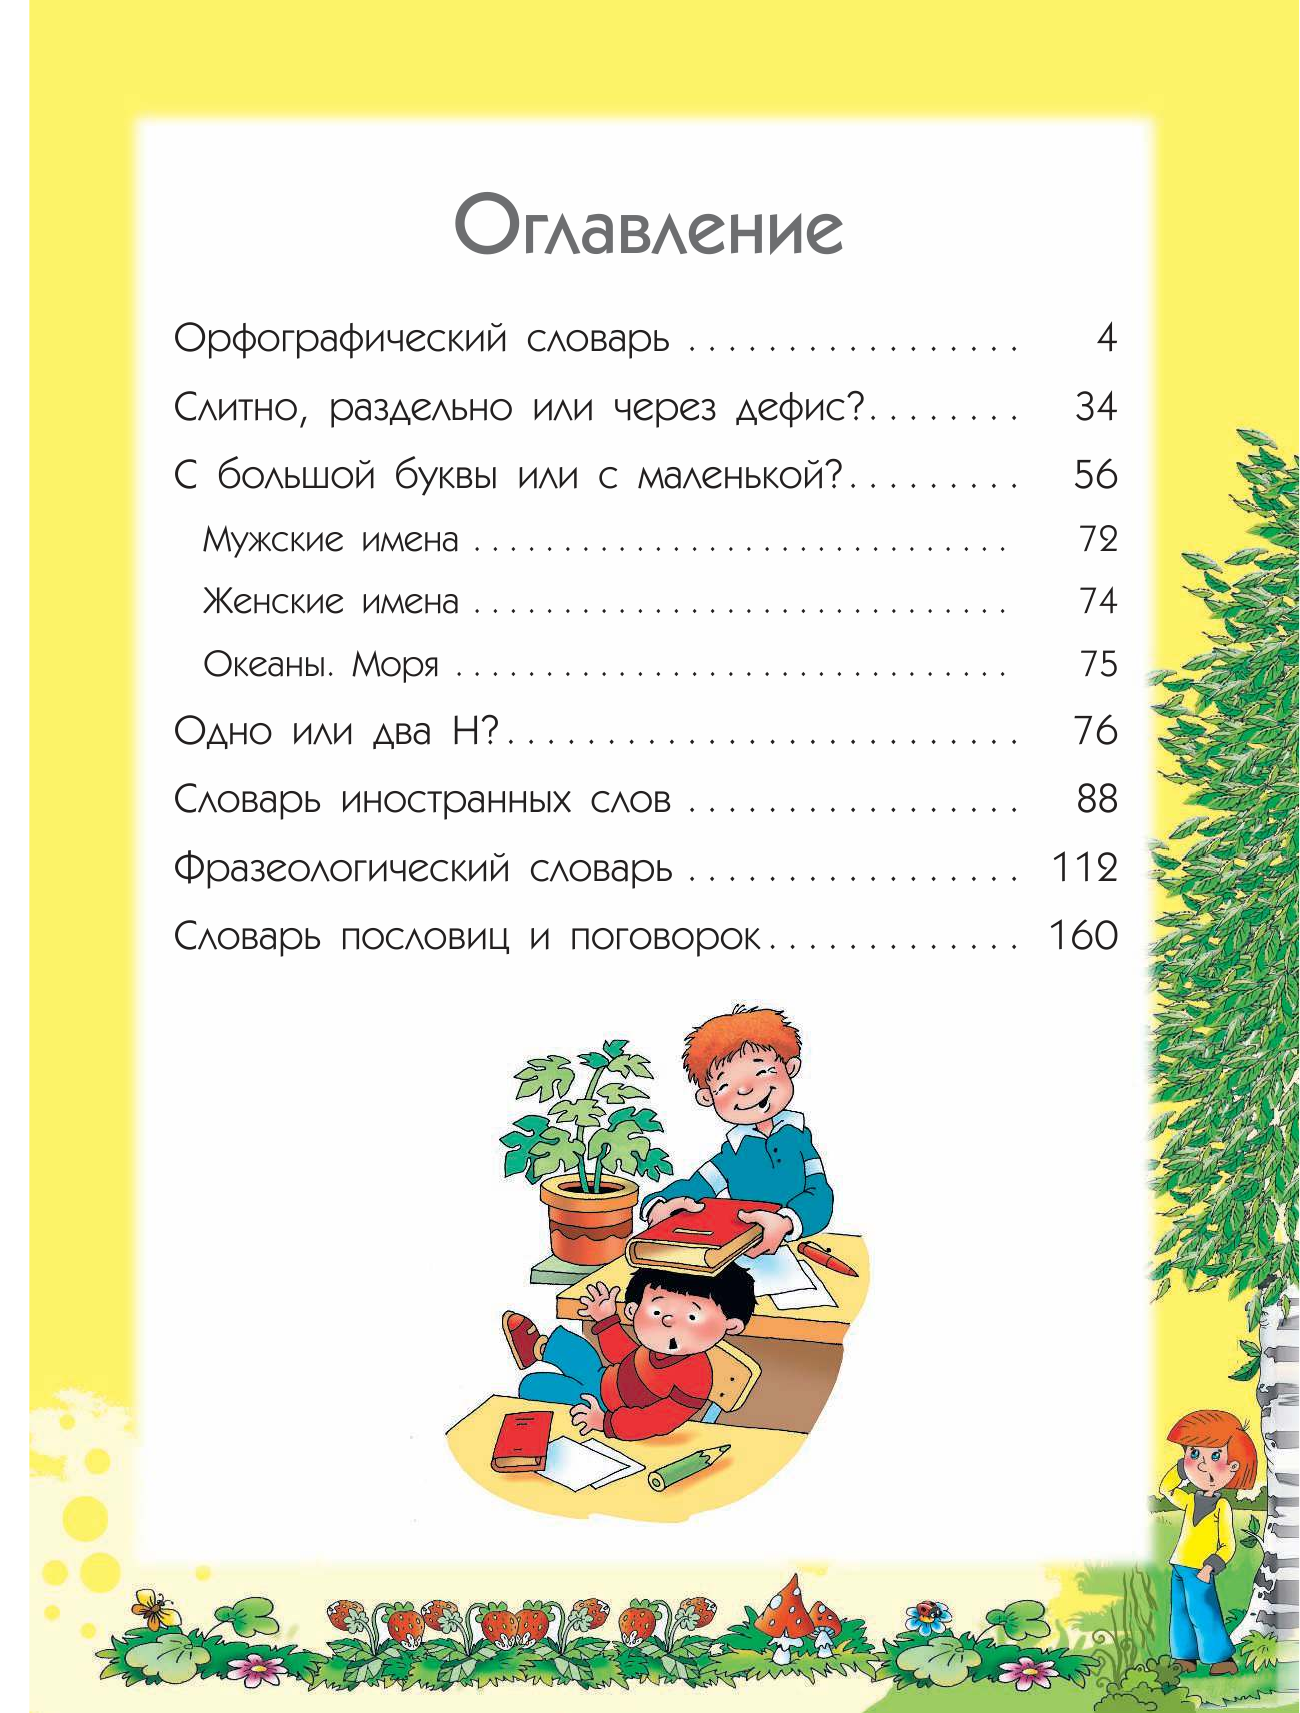 Недогонов Дмитрий Владимирович 7 иллюстрированных словарей русского языка для детей в одной книге - страница 4